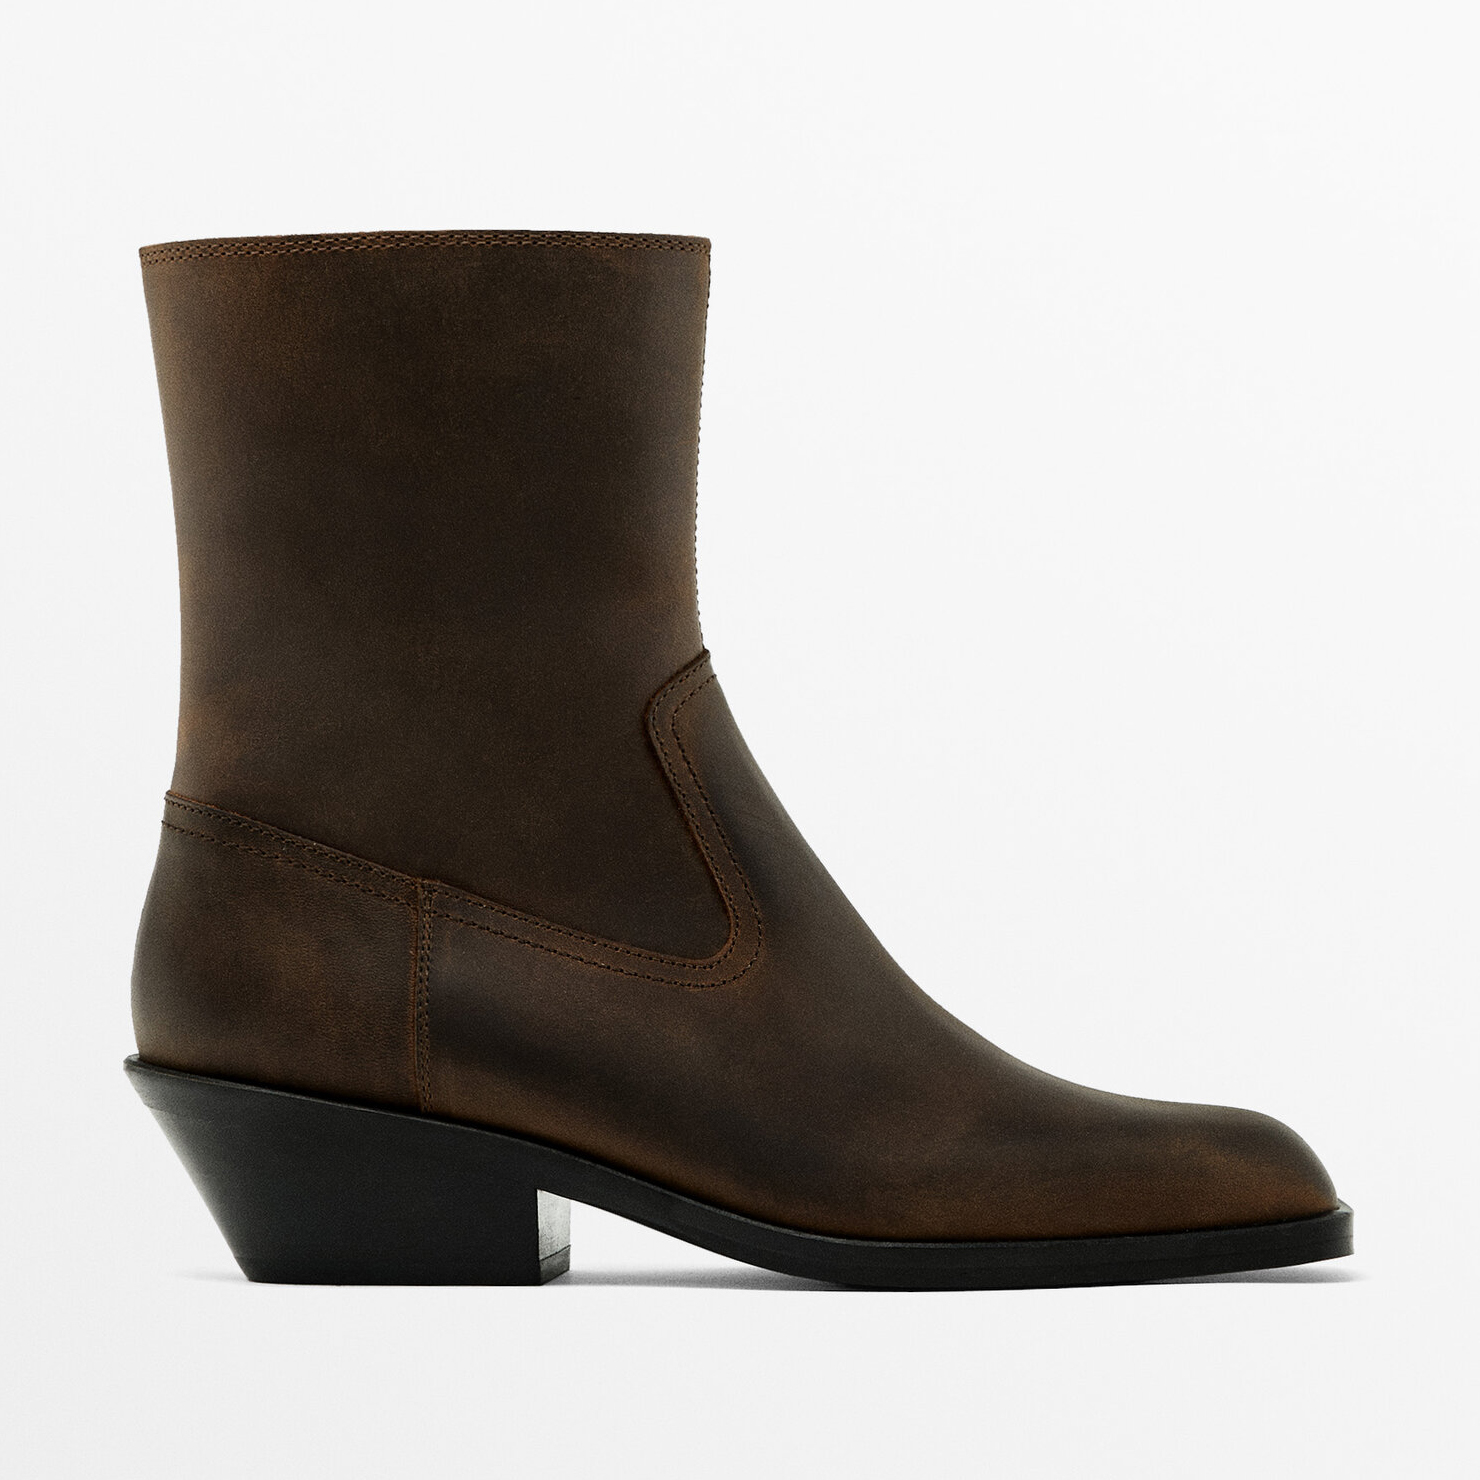 Полусапоги Massimo Dutti Heeled Square-toe Ankle, коричневый джинсы женские massimo dutti размер 40